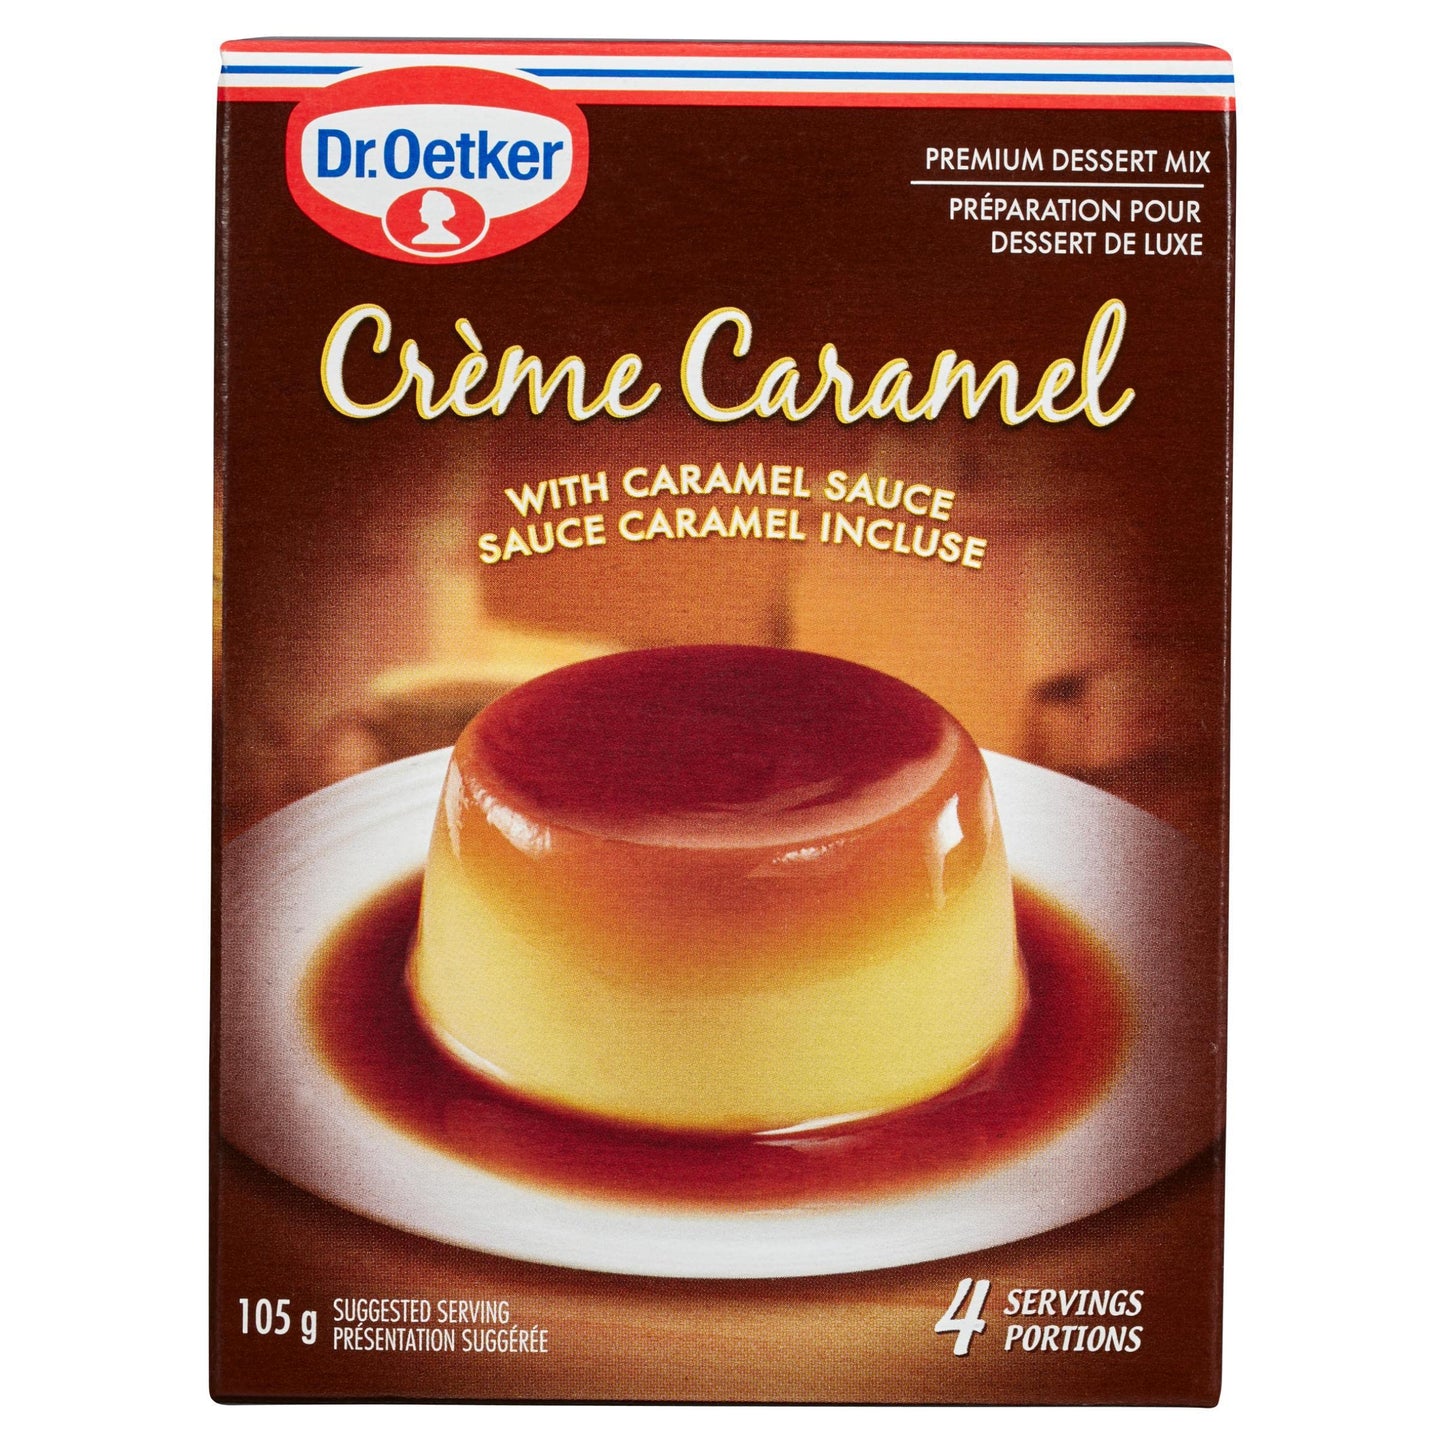 Dr. Oetker Creme Caramel Dessert Mix 1